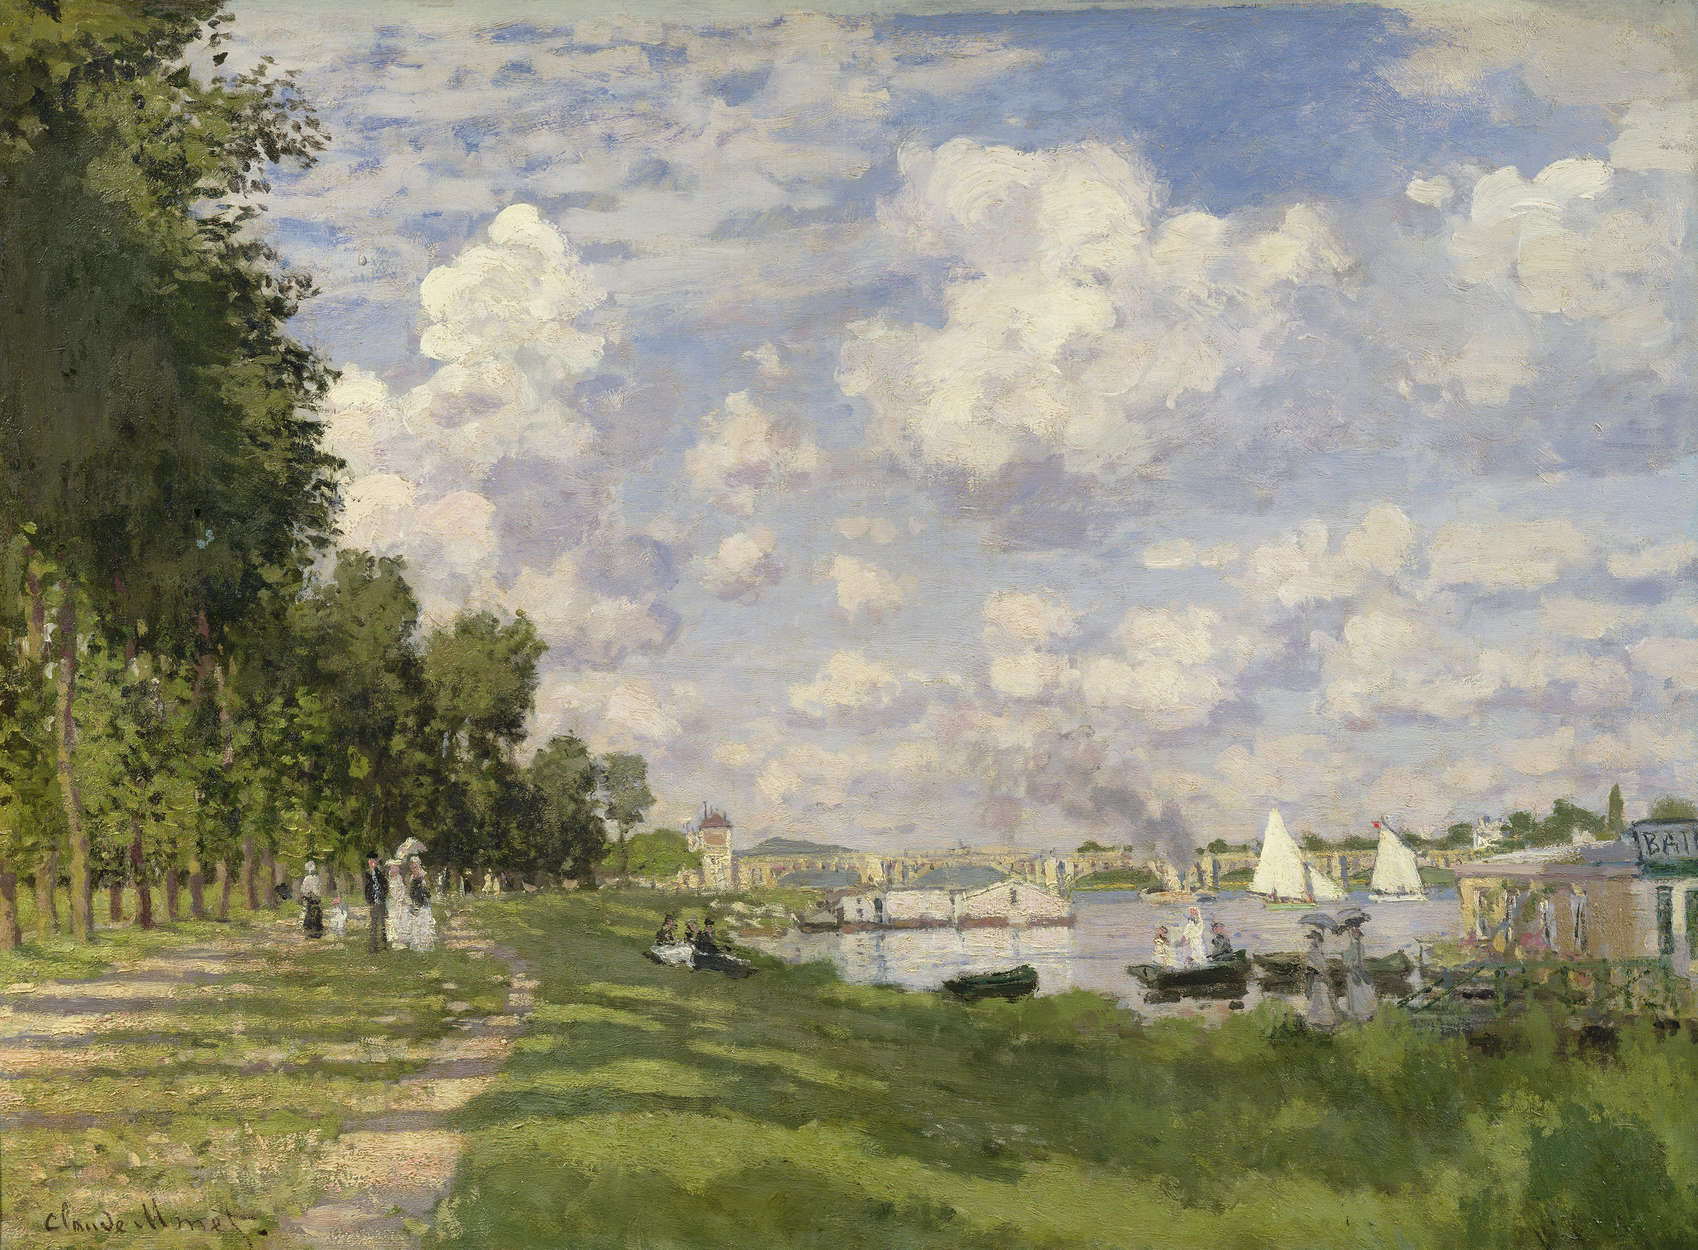             Fototapete "Der Jachthafen von Argenteuil" von Claude Monet
        